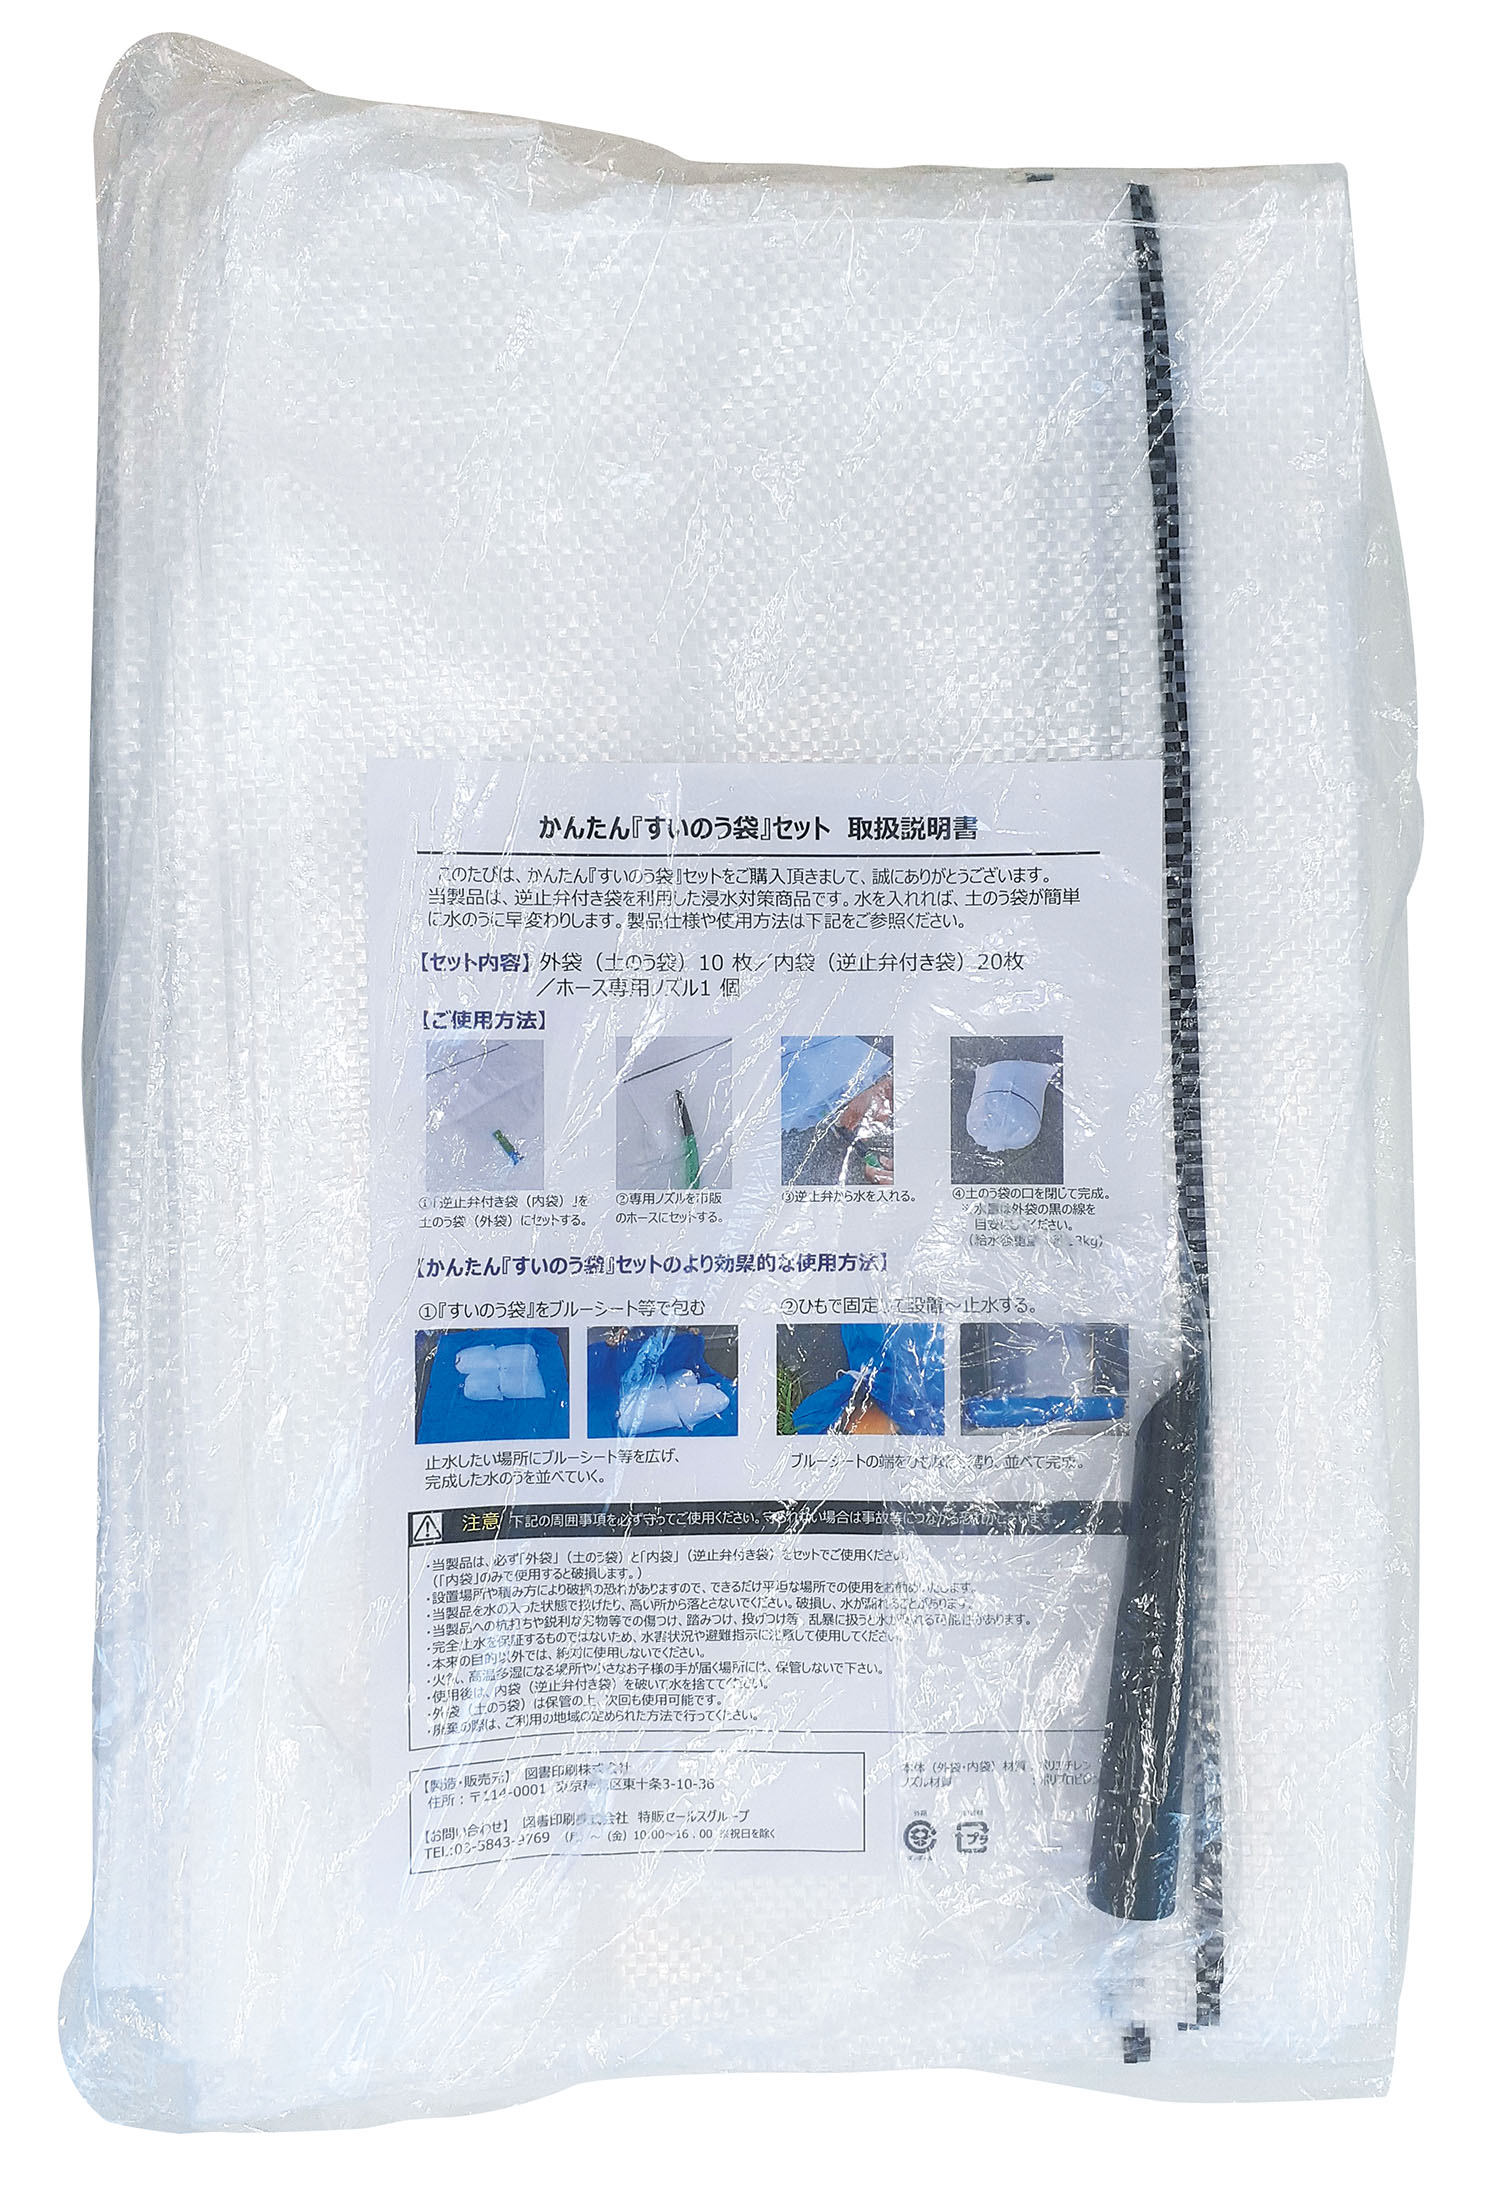 防災用品 かんたん水嚢袋セット すいのう袋 土嚢袋 水害 浸水 逆流防止